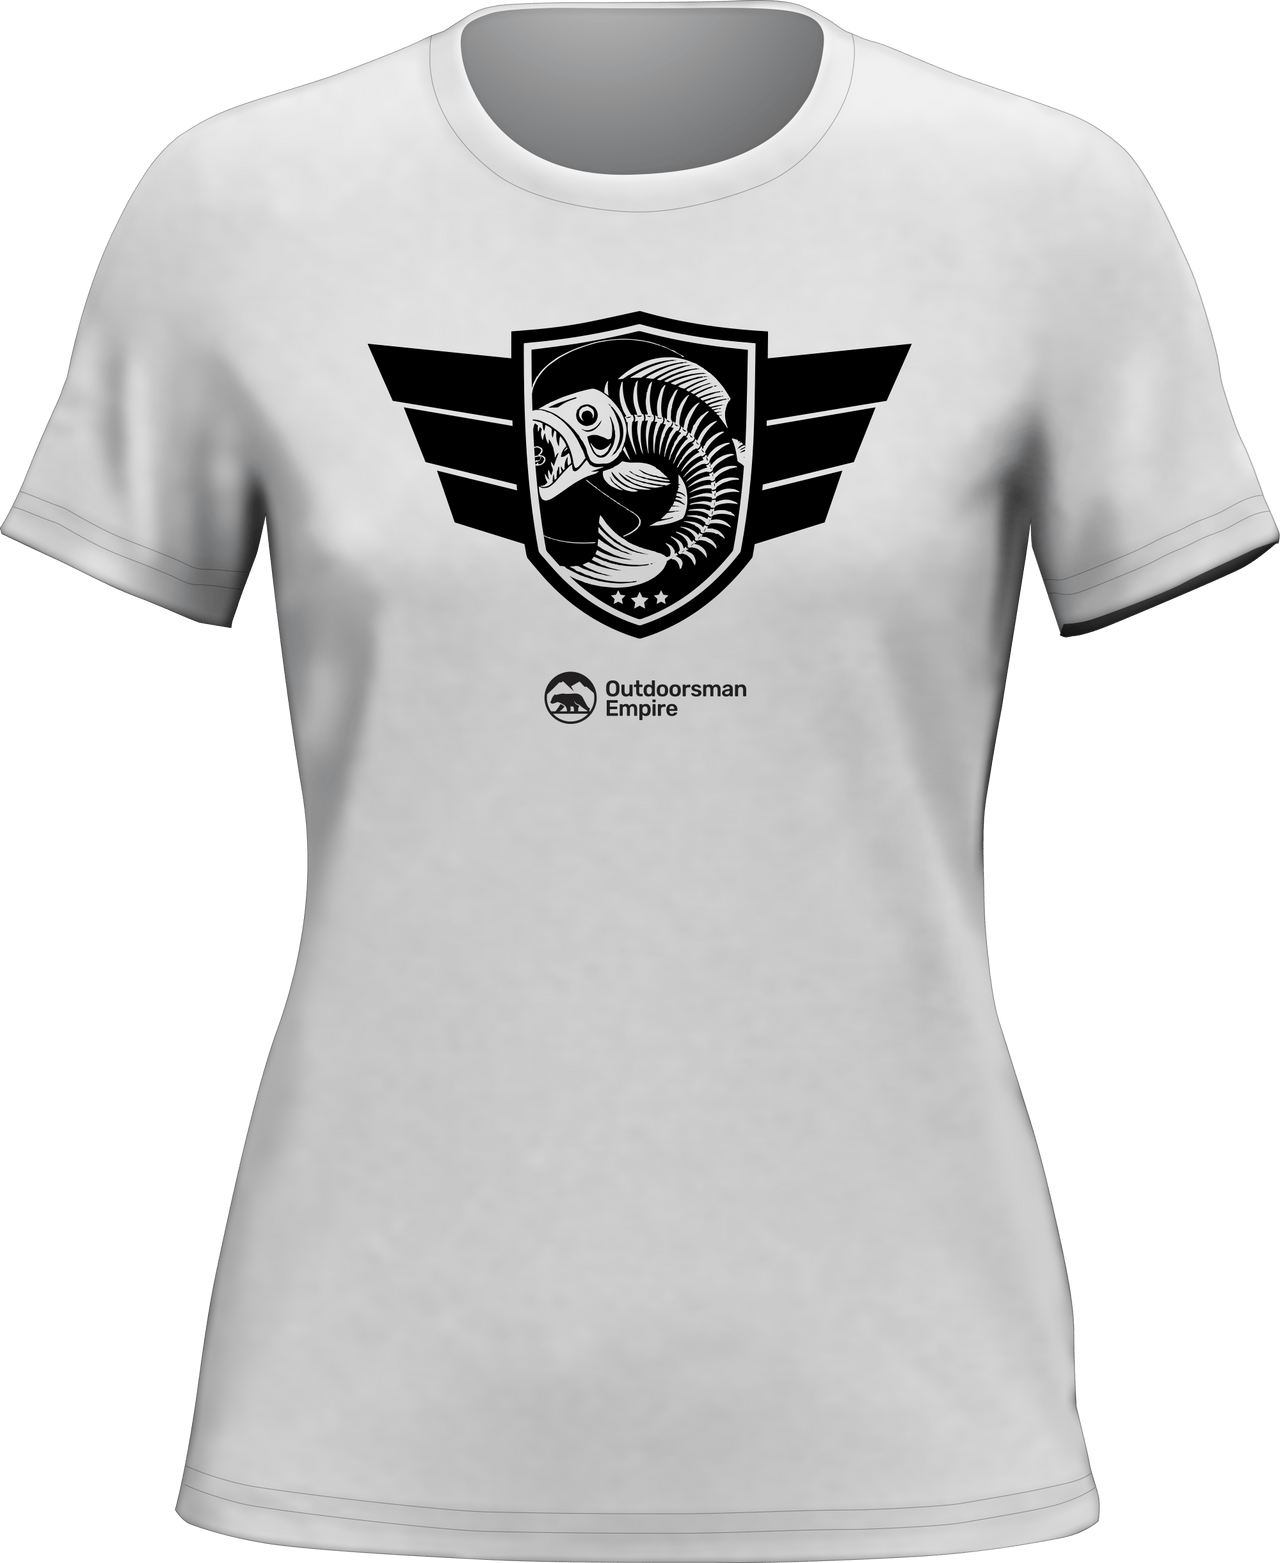 Fishing Air Force T-Shirt for Women